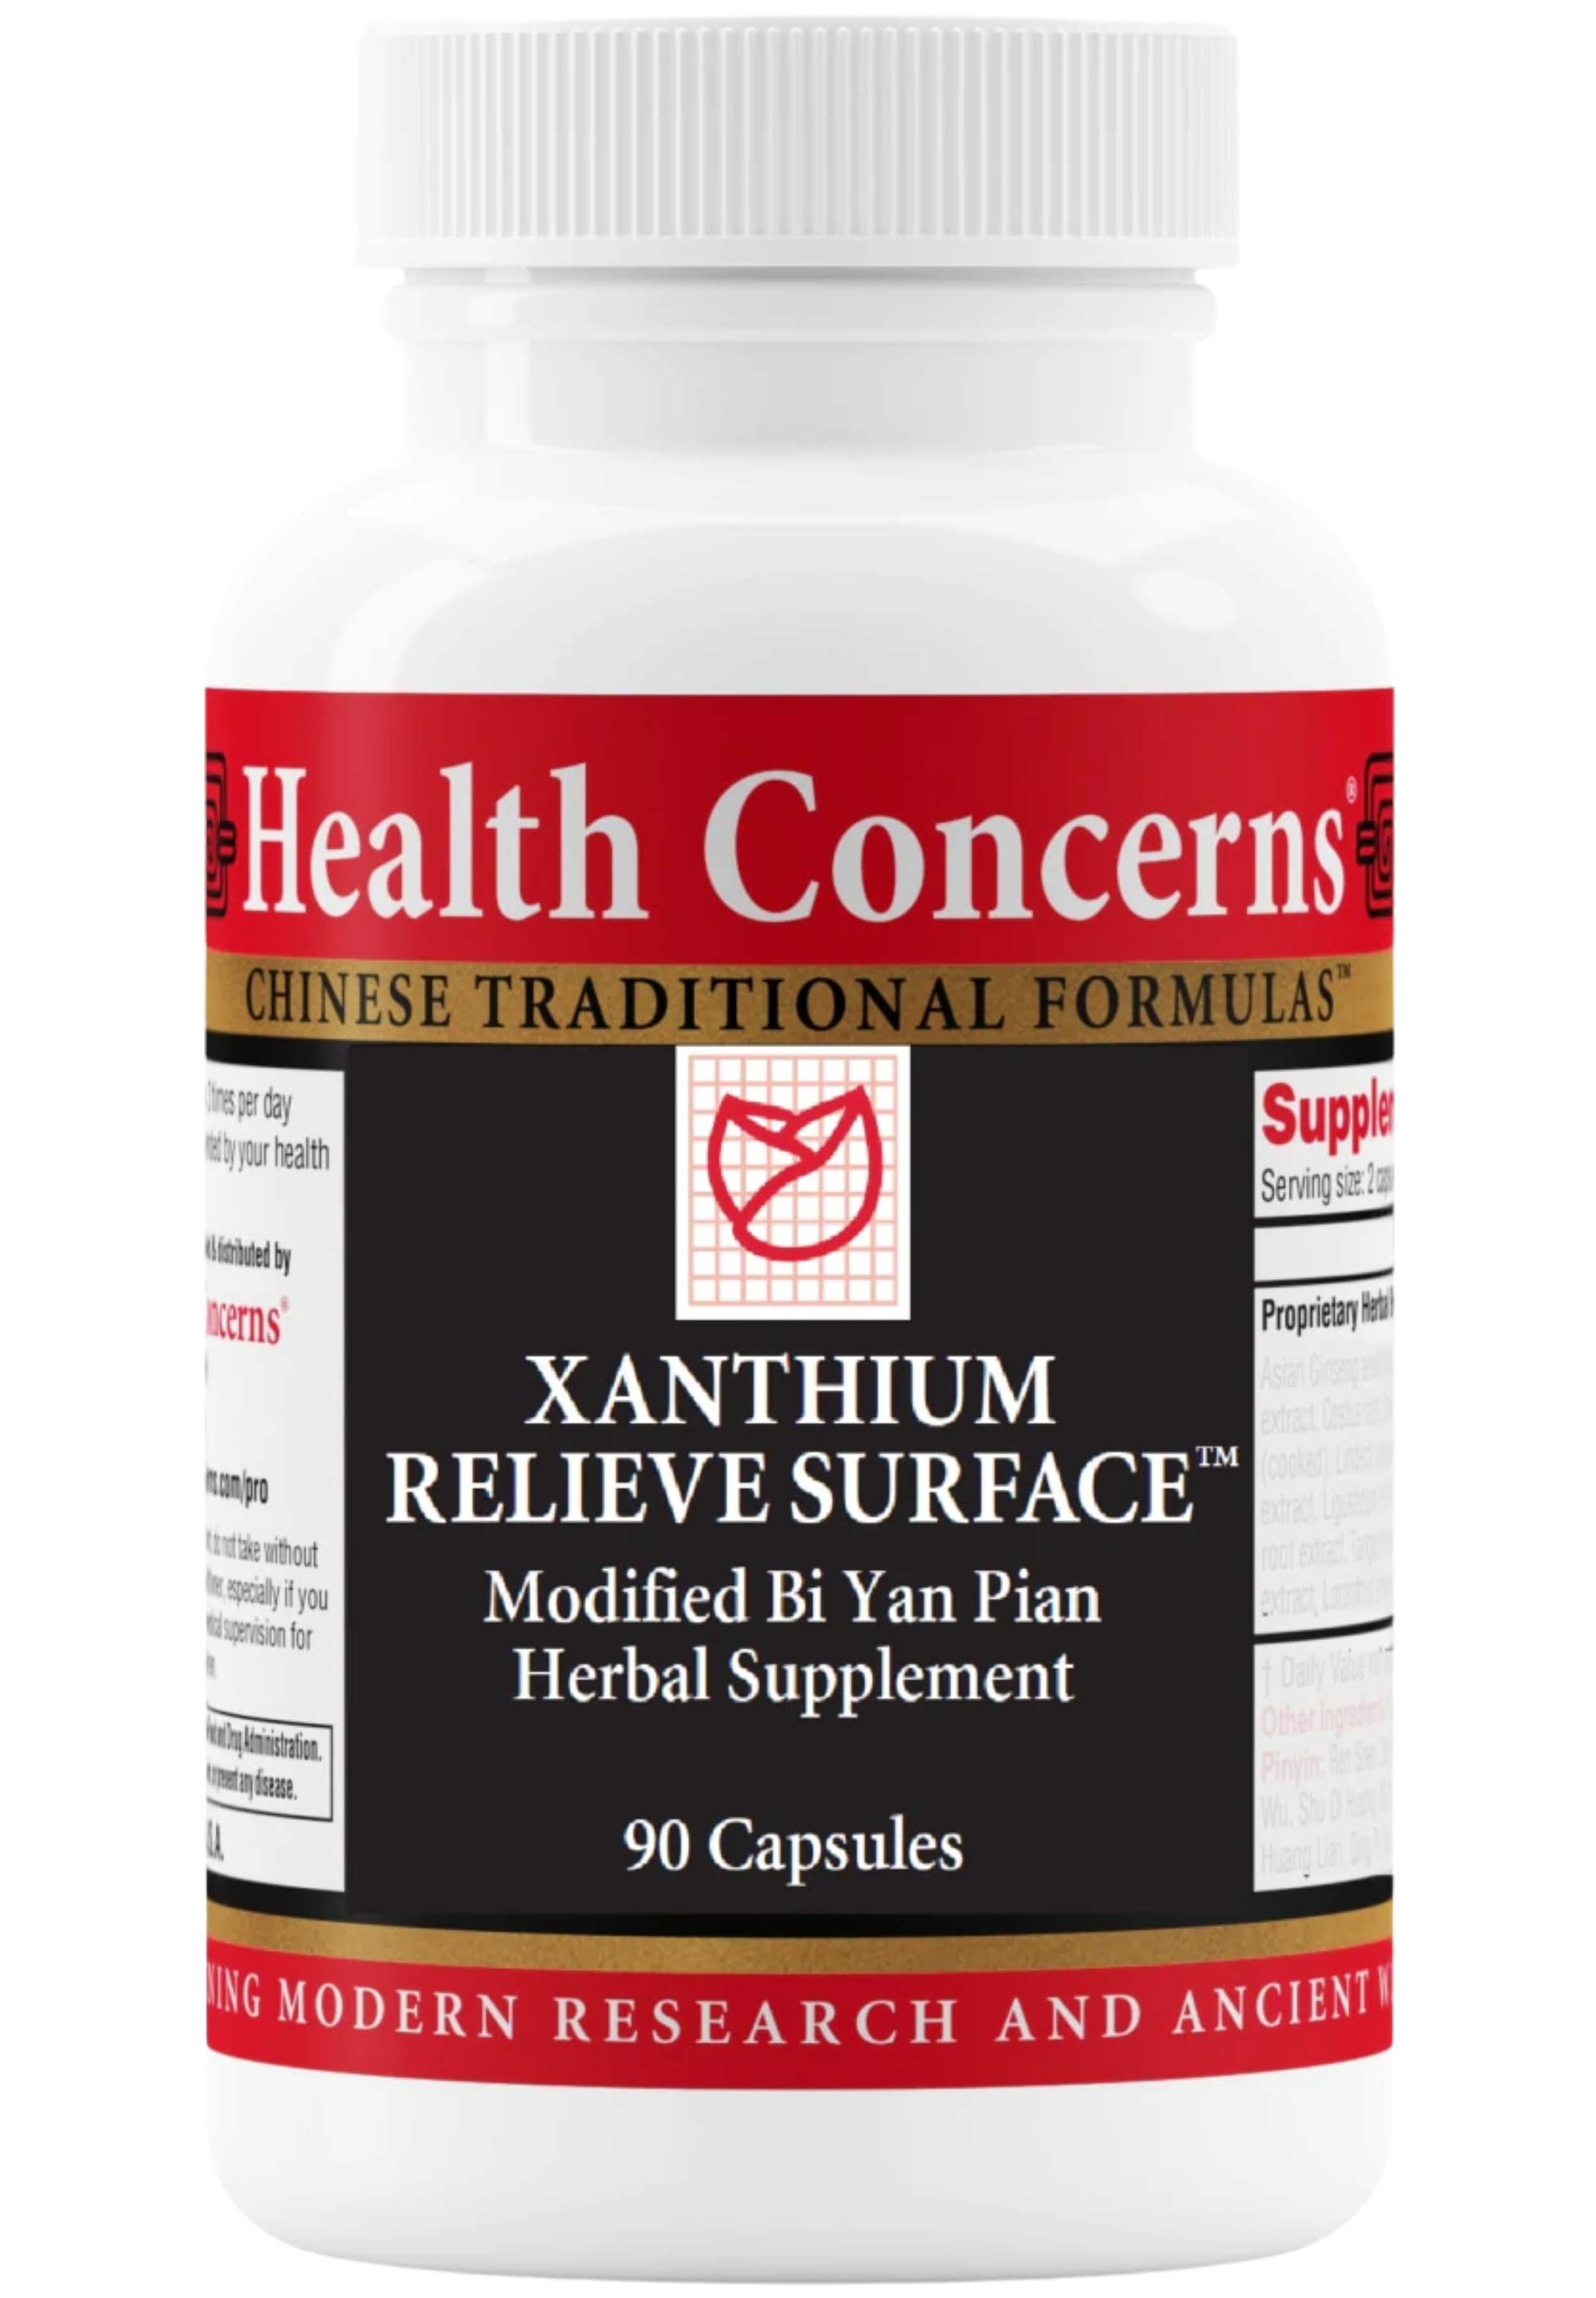 Health Concerns Xanthium Relieve Surface